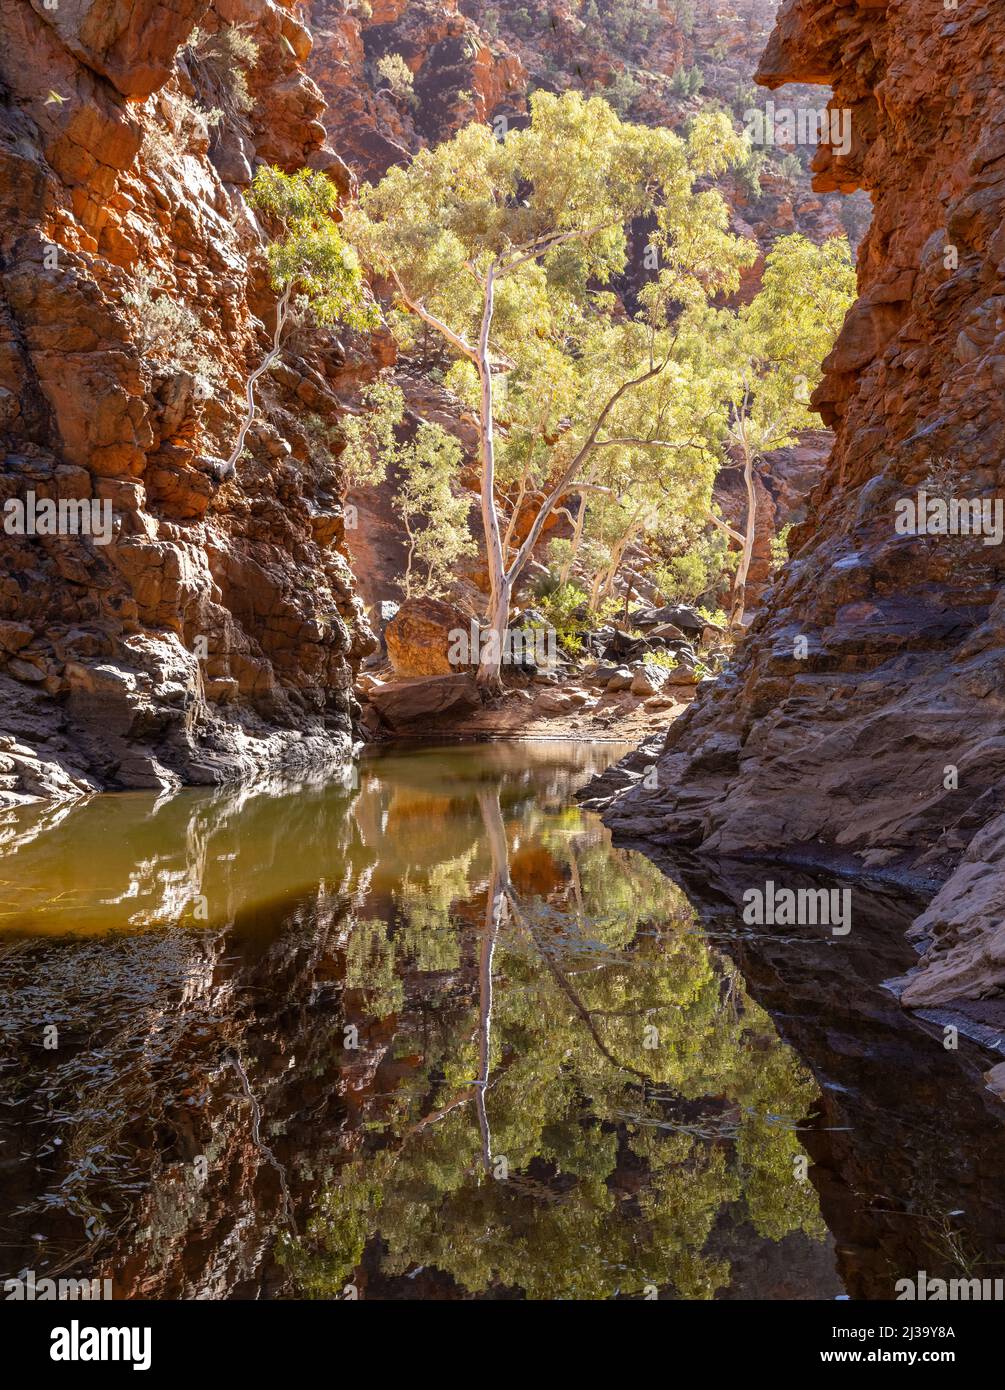 goma fantasma y su reflejo en la garganta serpentina en tjoritja - oeste macdonnell parque nacional del territorio norte Foto de stock